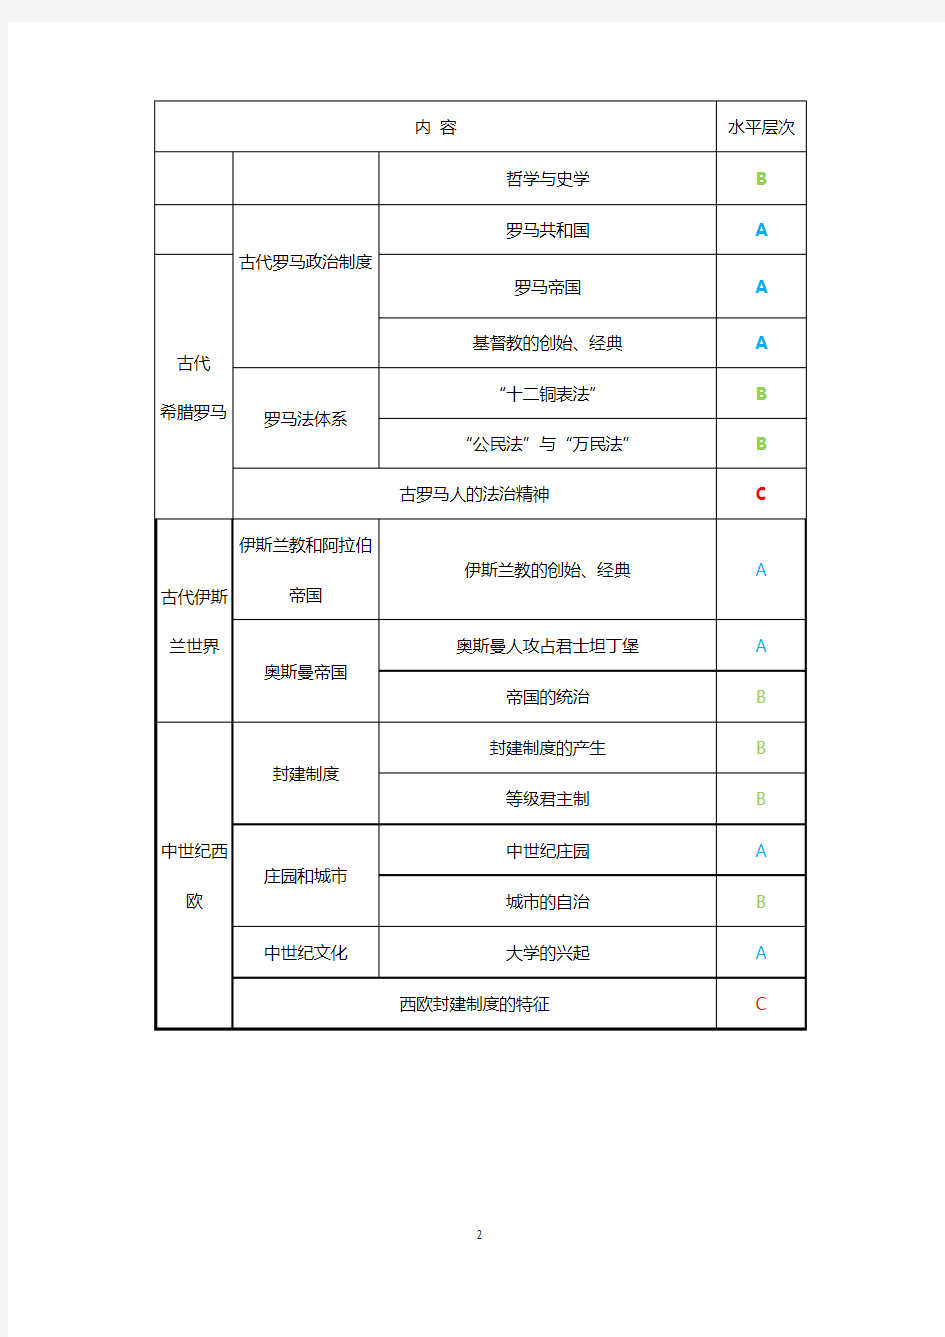 2015年上海高考历史学科考试要求(考试大纲)